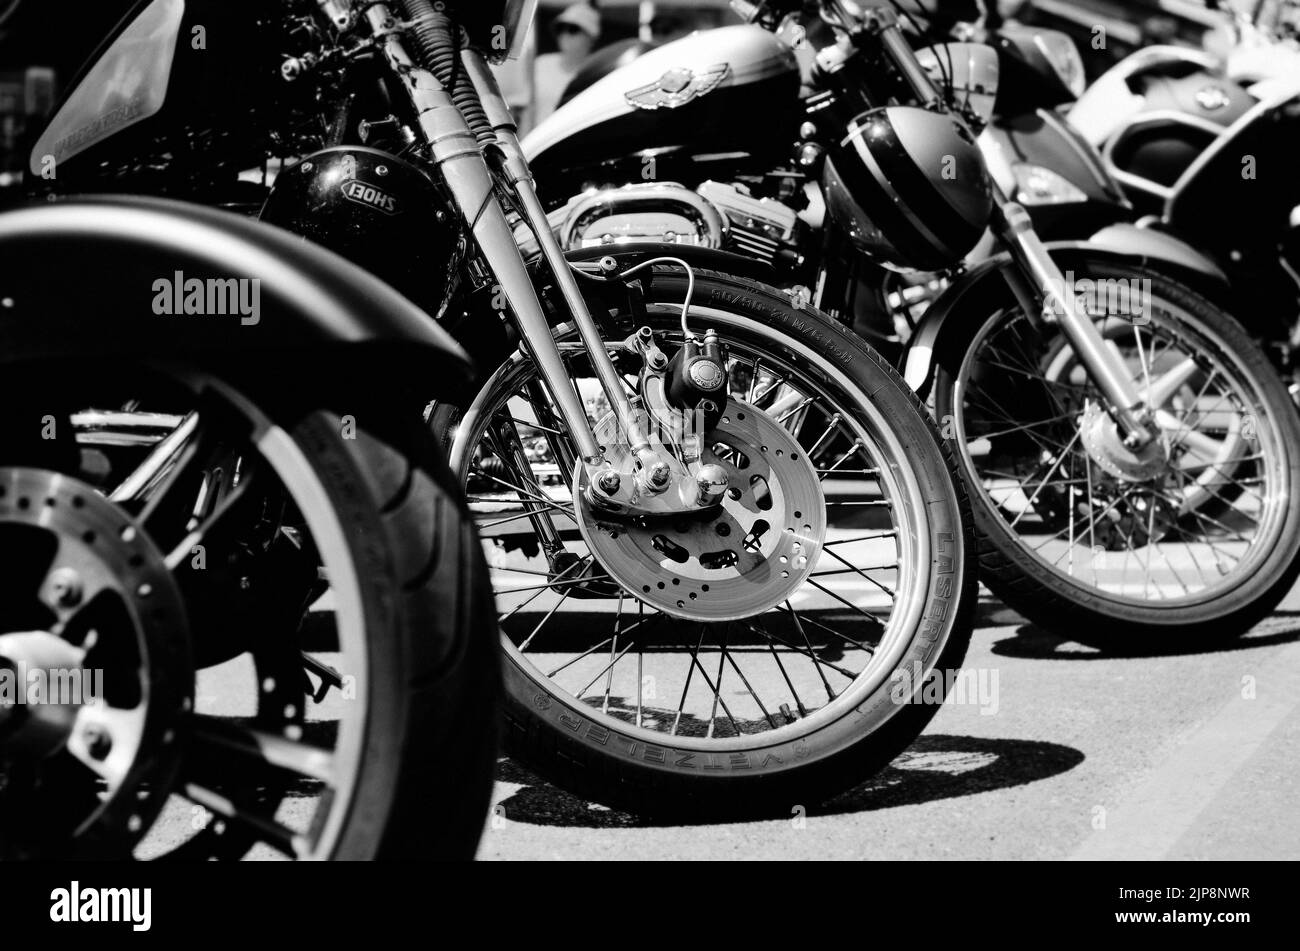 Portorož, Slovénie. 06.12.2022. Cool Bikers Harley Davidson festival, exposition. Gros plan sur le bloc-moteur de la moto chromée. Banque D'Images